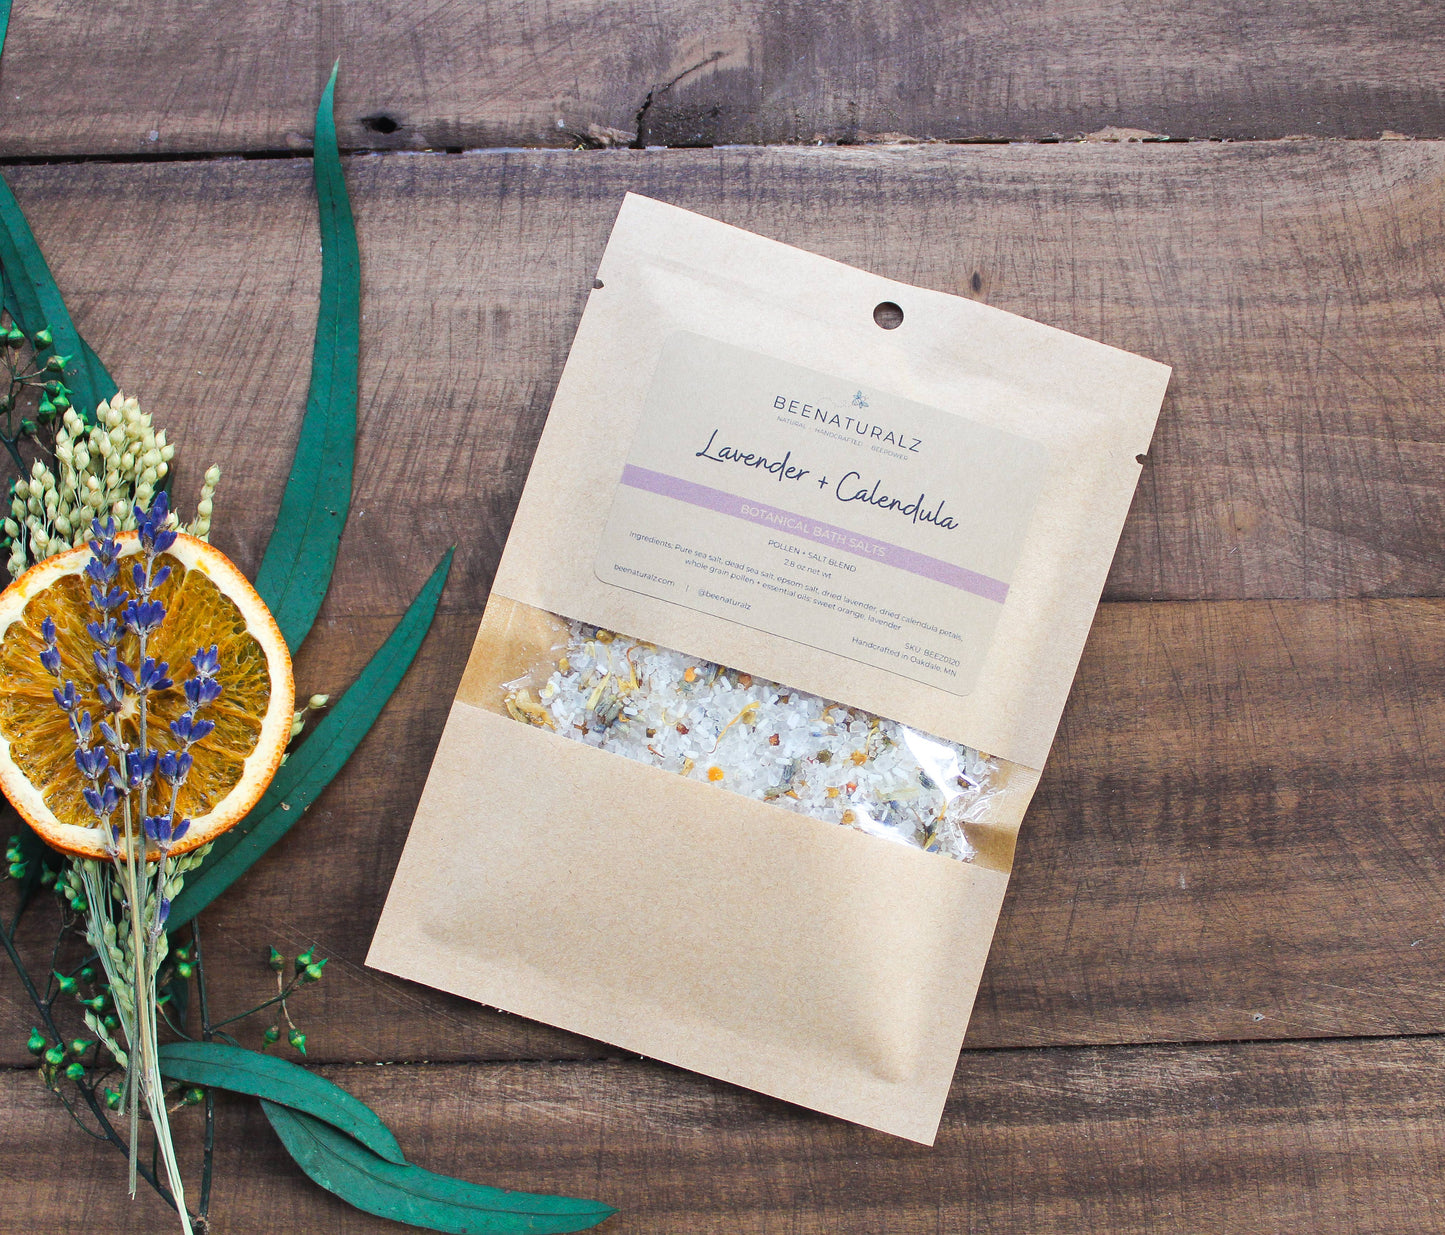 Botanical Pollen Bath Salts - Lavender + Calendula: 2.8 oz pouch